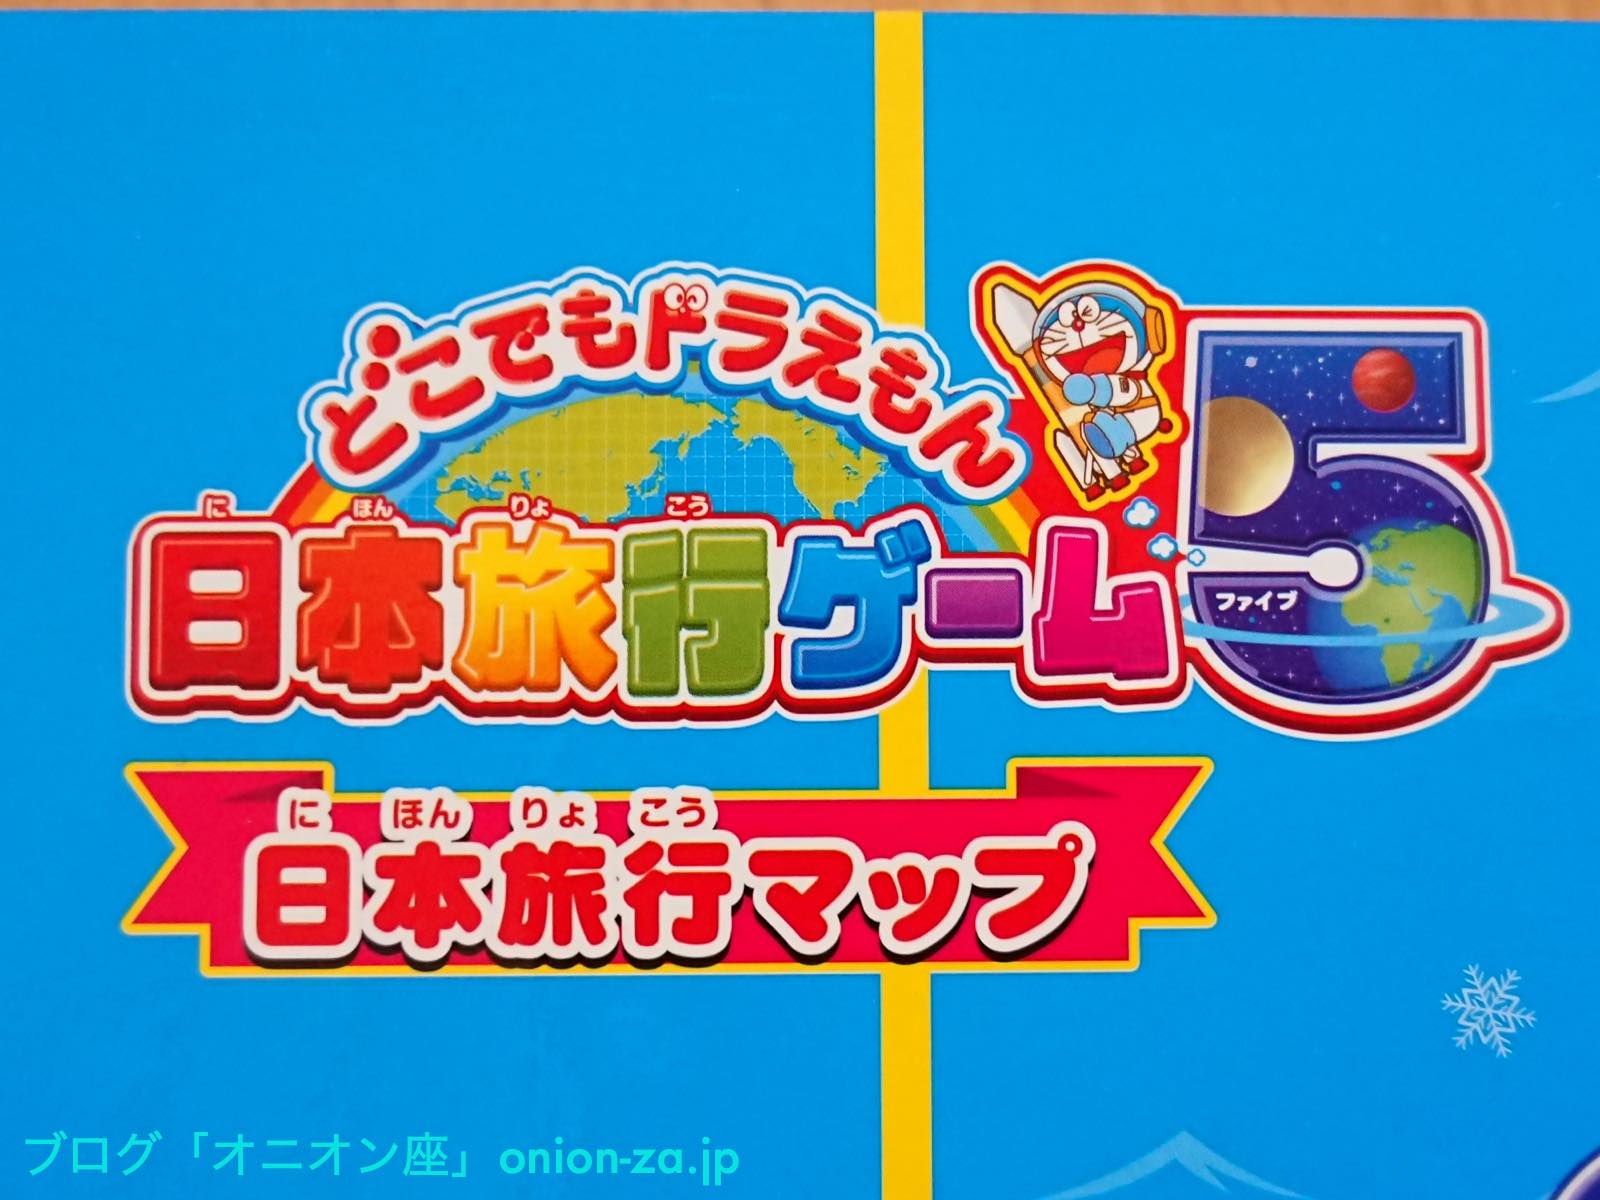 ステイホーム！お家で遊べるすごろくゲーム「どこでもドラえもん日本旅行ゲーム5」をやってみた - パパママ世代応援ブログ：オニオン座